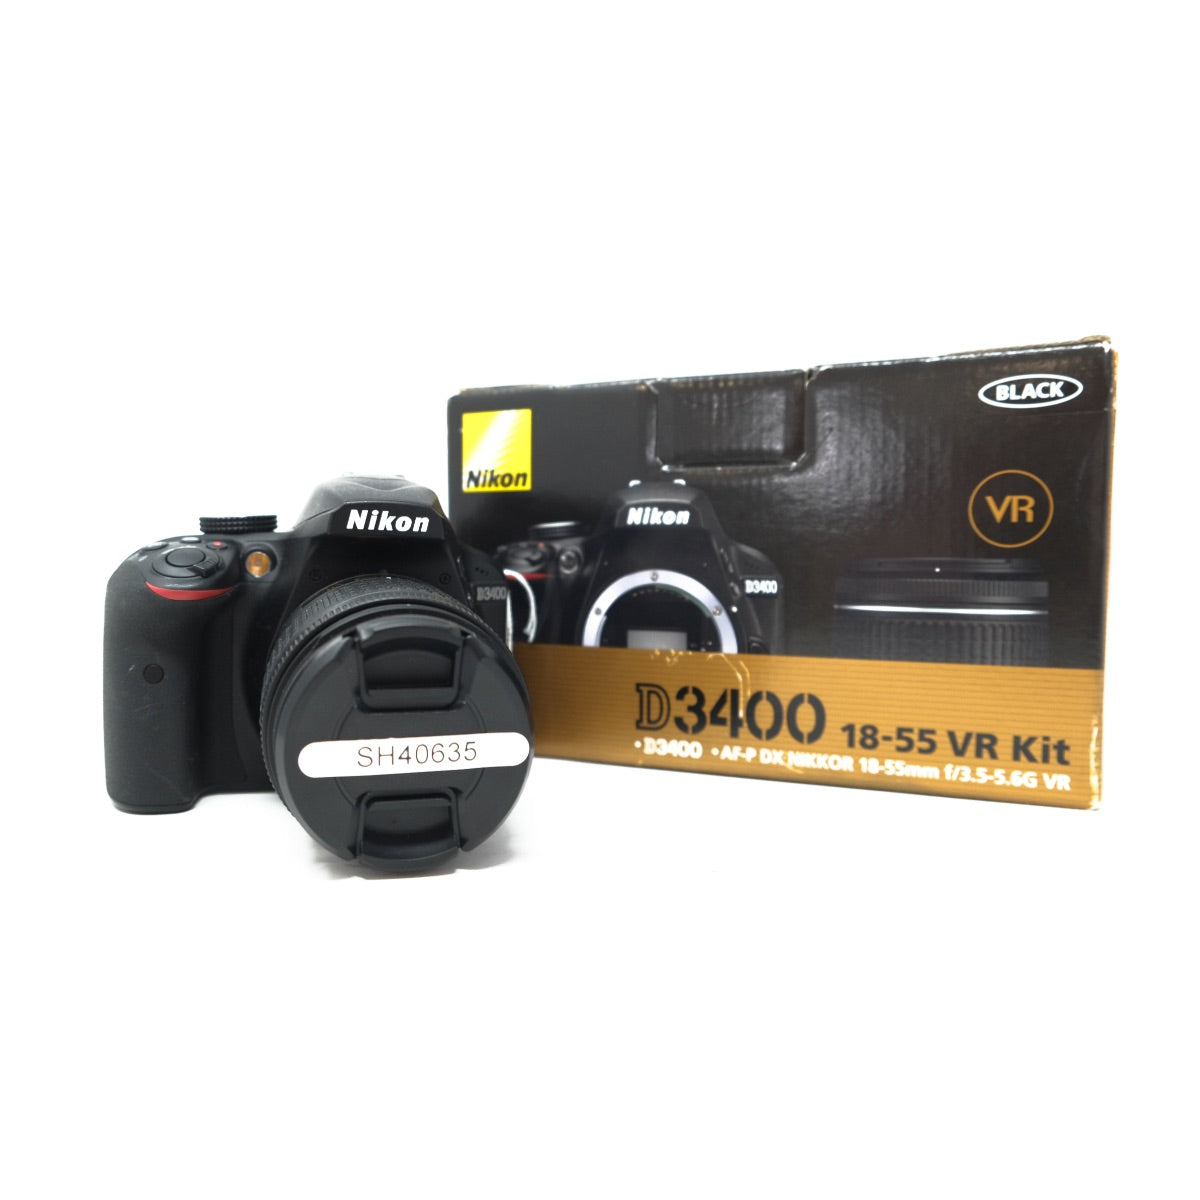 Used Nikon D3400 DSLR + 18-55mm F3.5-5.6G VR lens